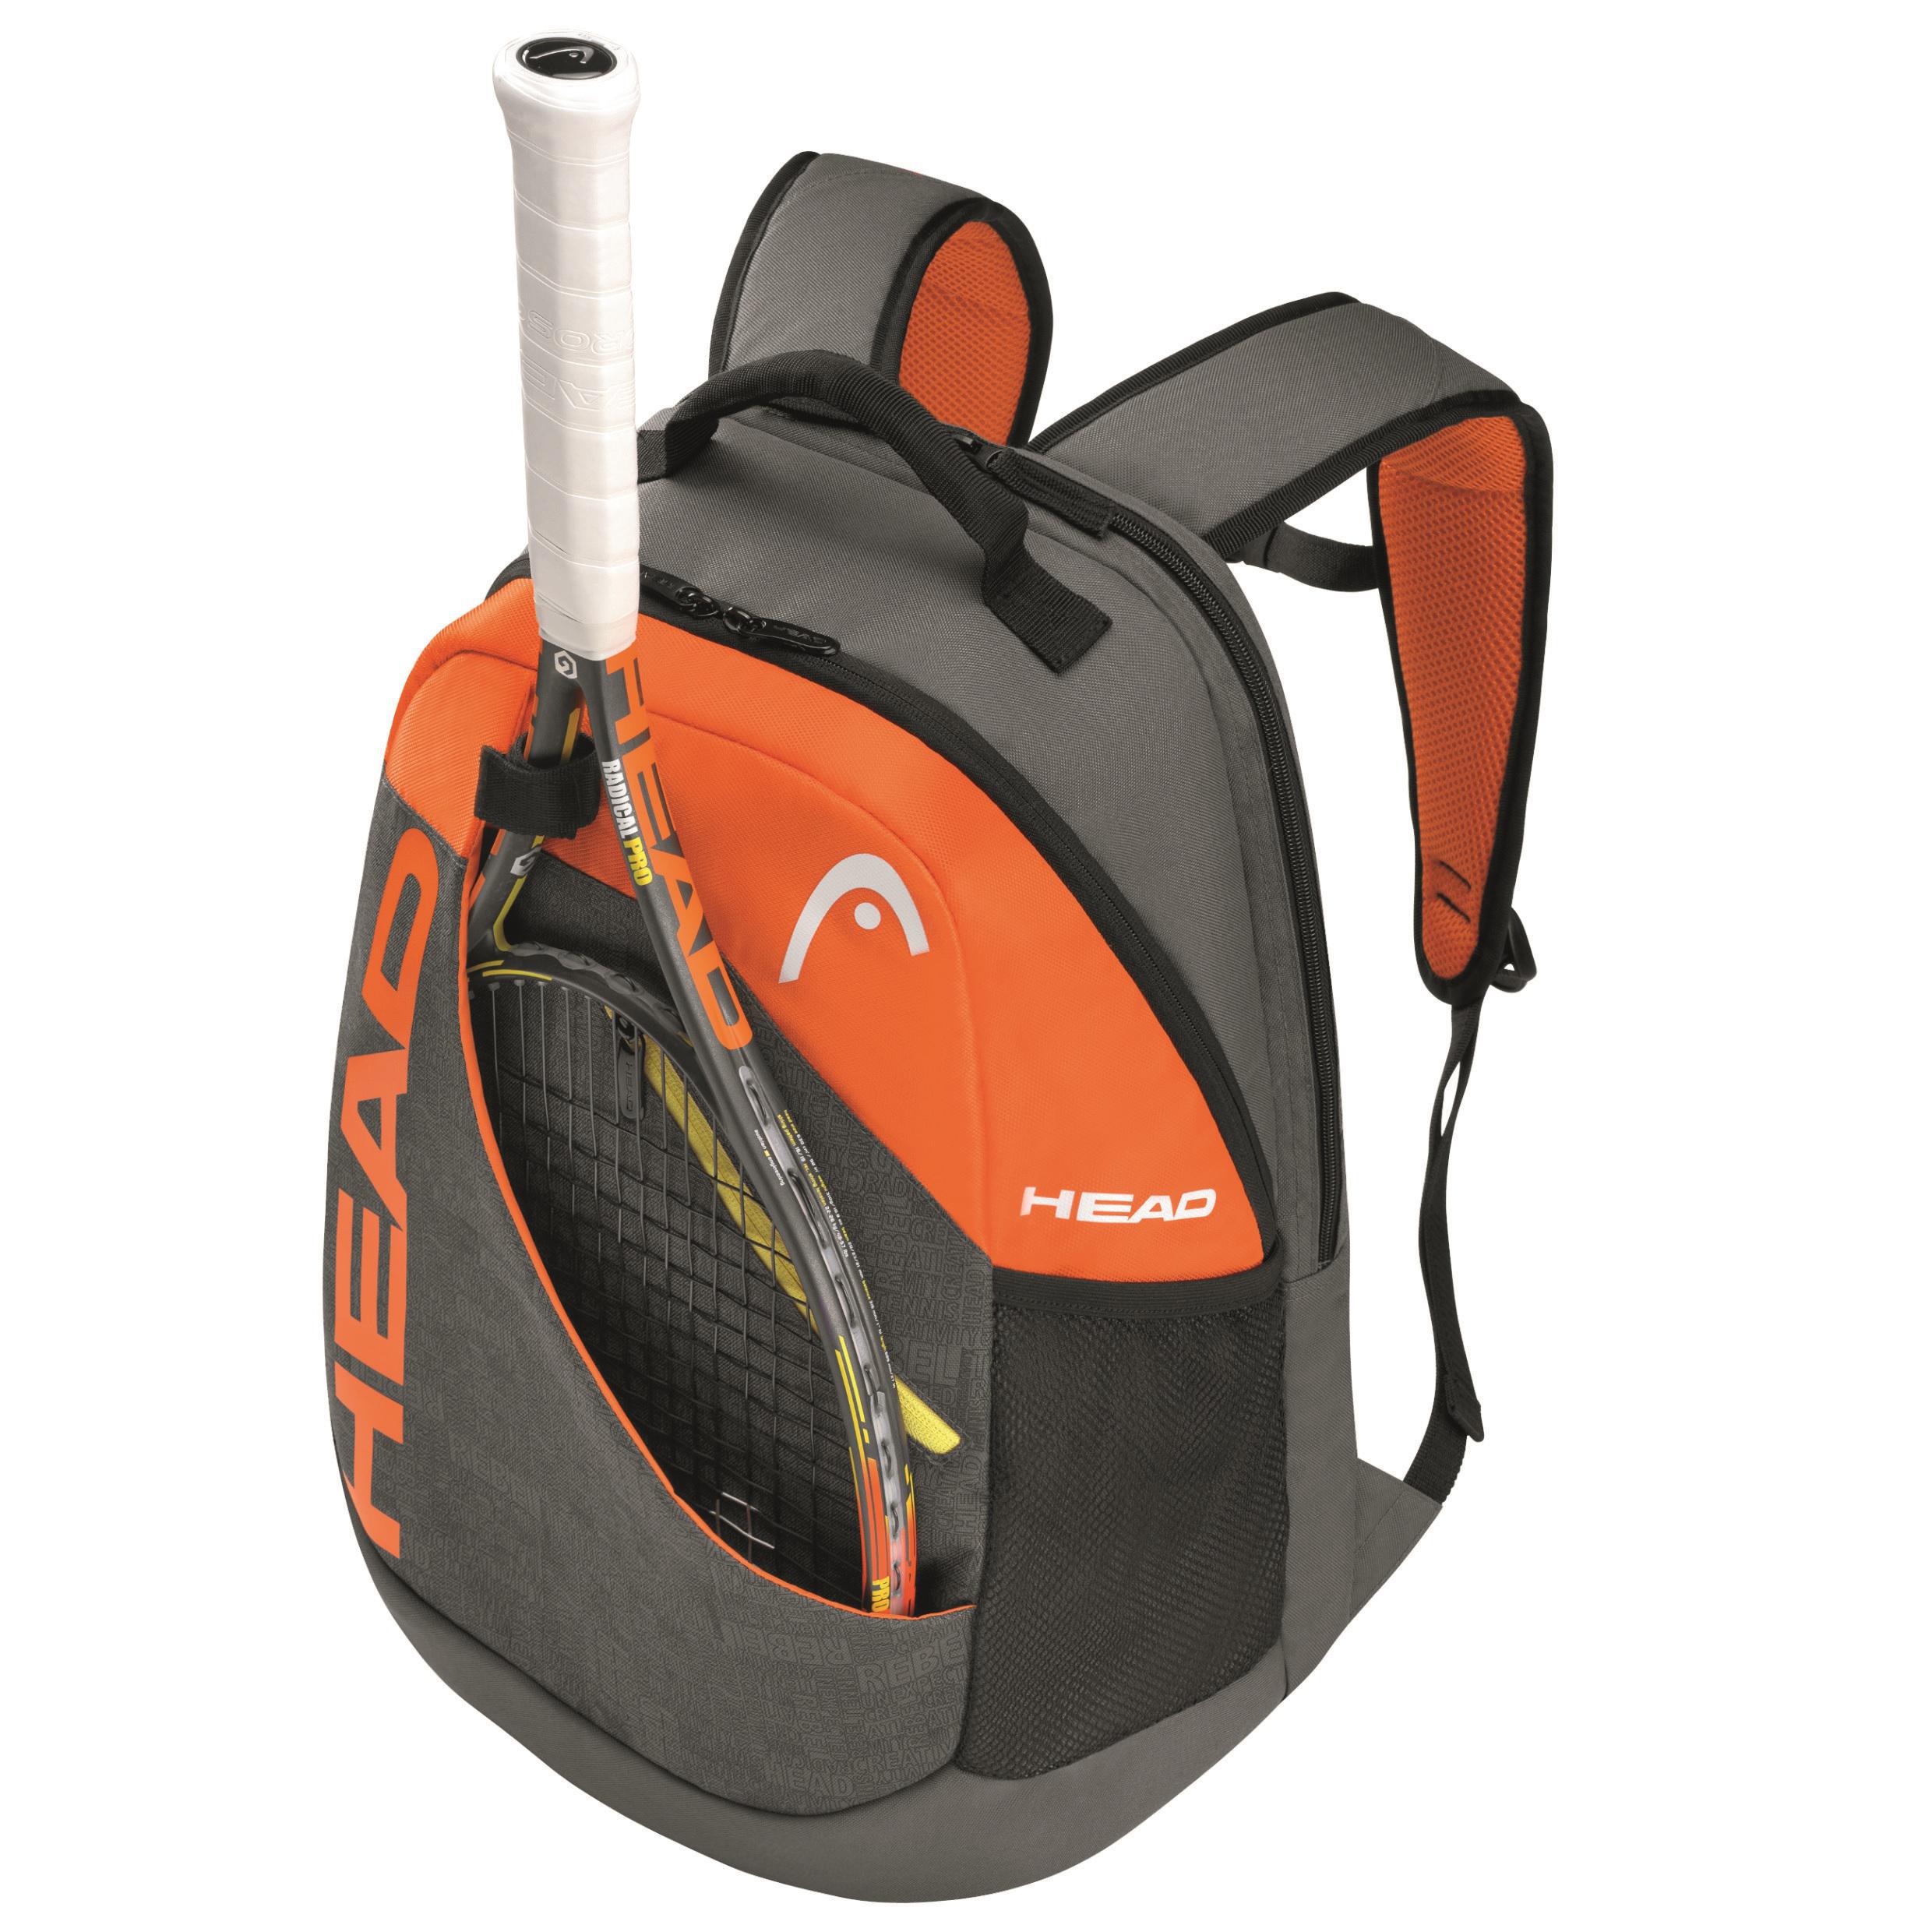 https://www.tennisnuts.com/images/product/full/g_283274_Rebel_Backpack_DL.jpg